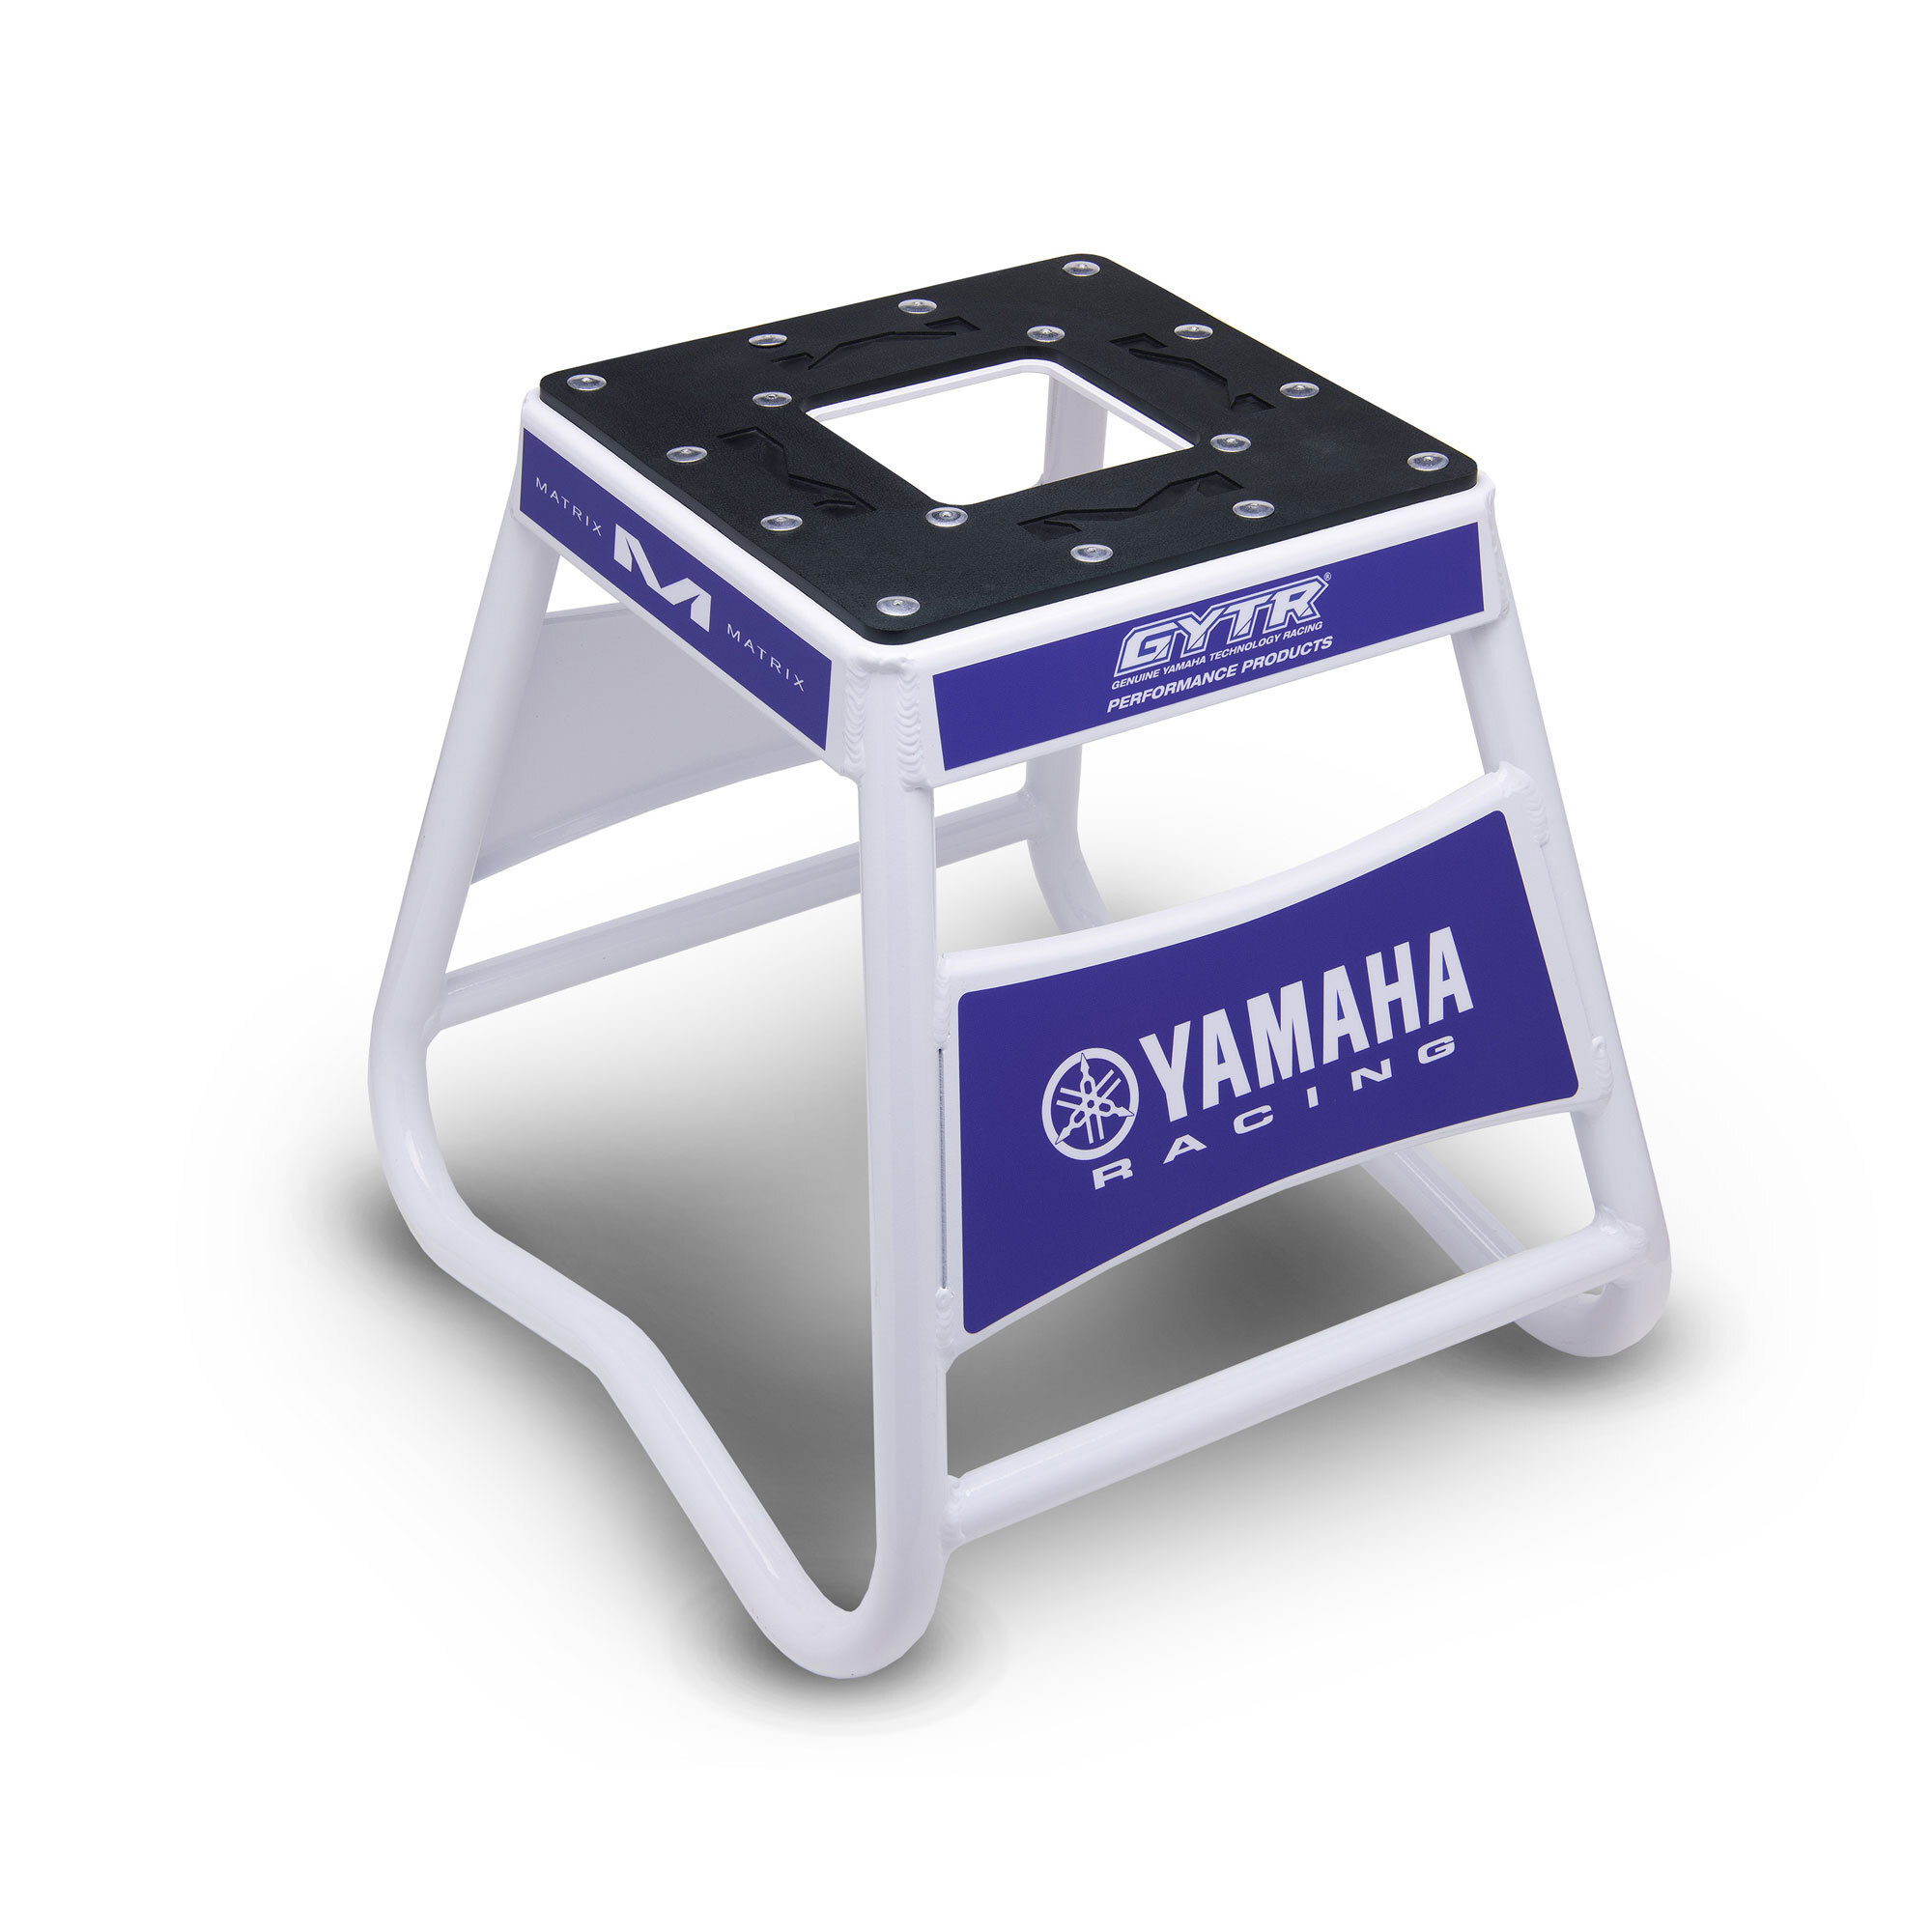 Matrix Concepts Yamaha Racing A2 Stand